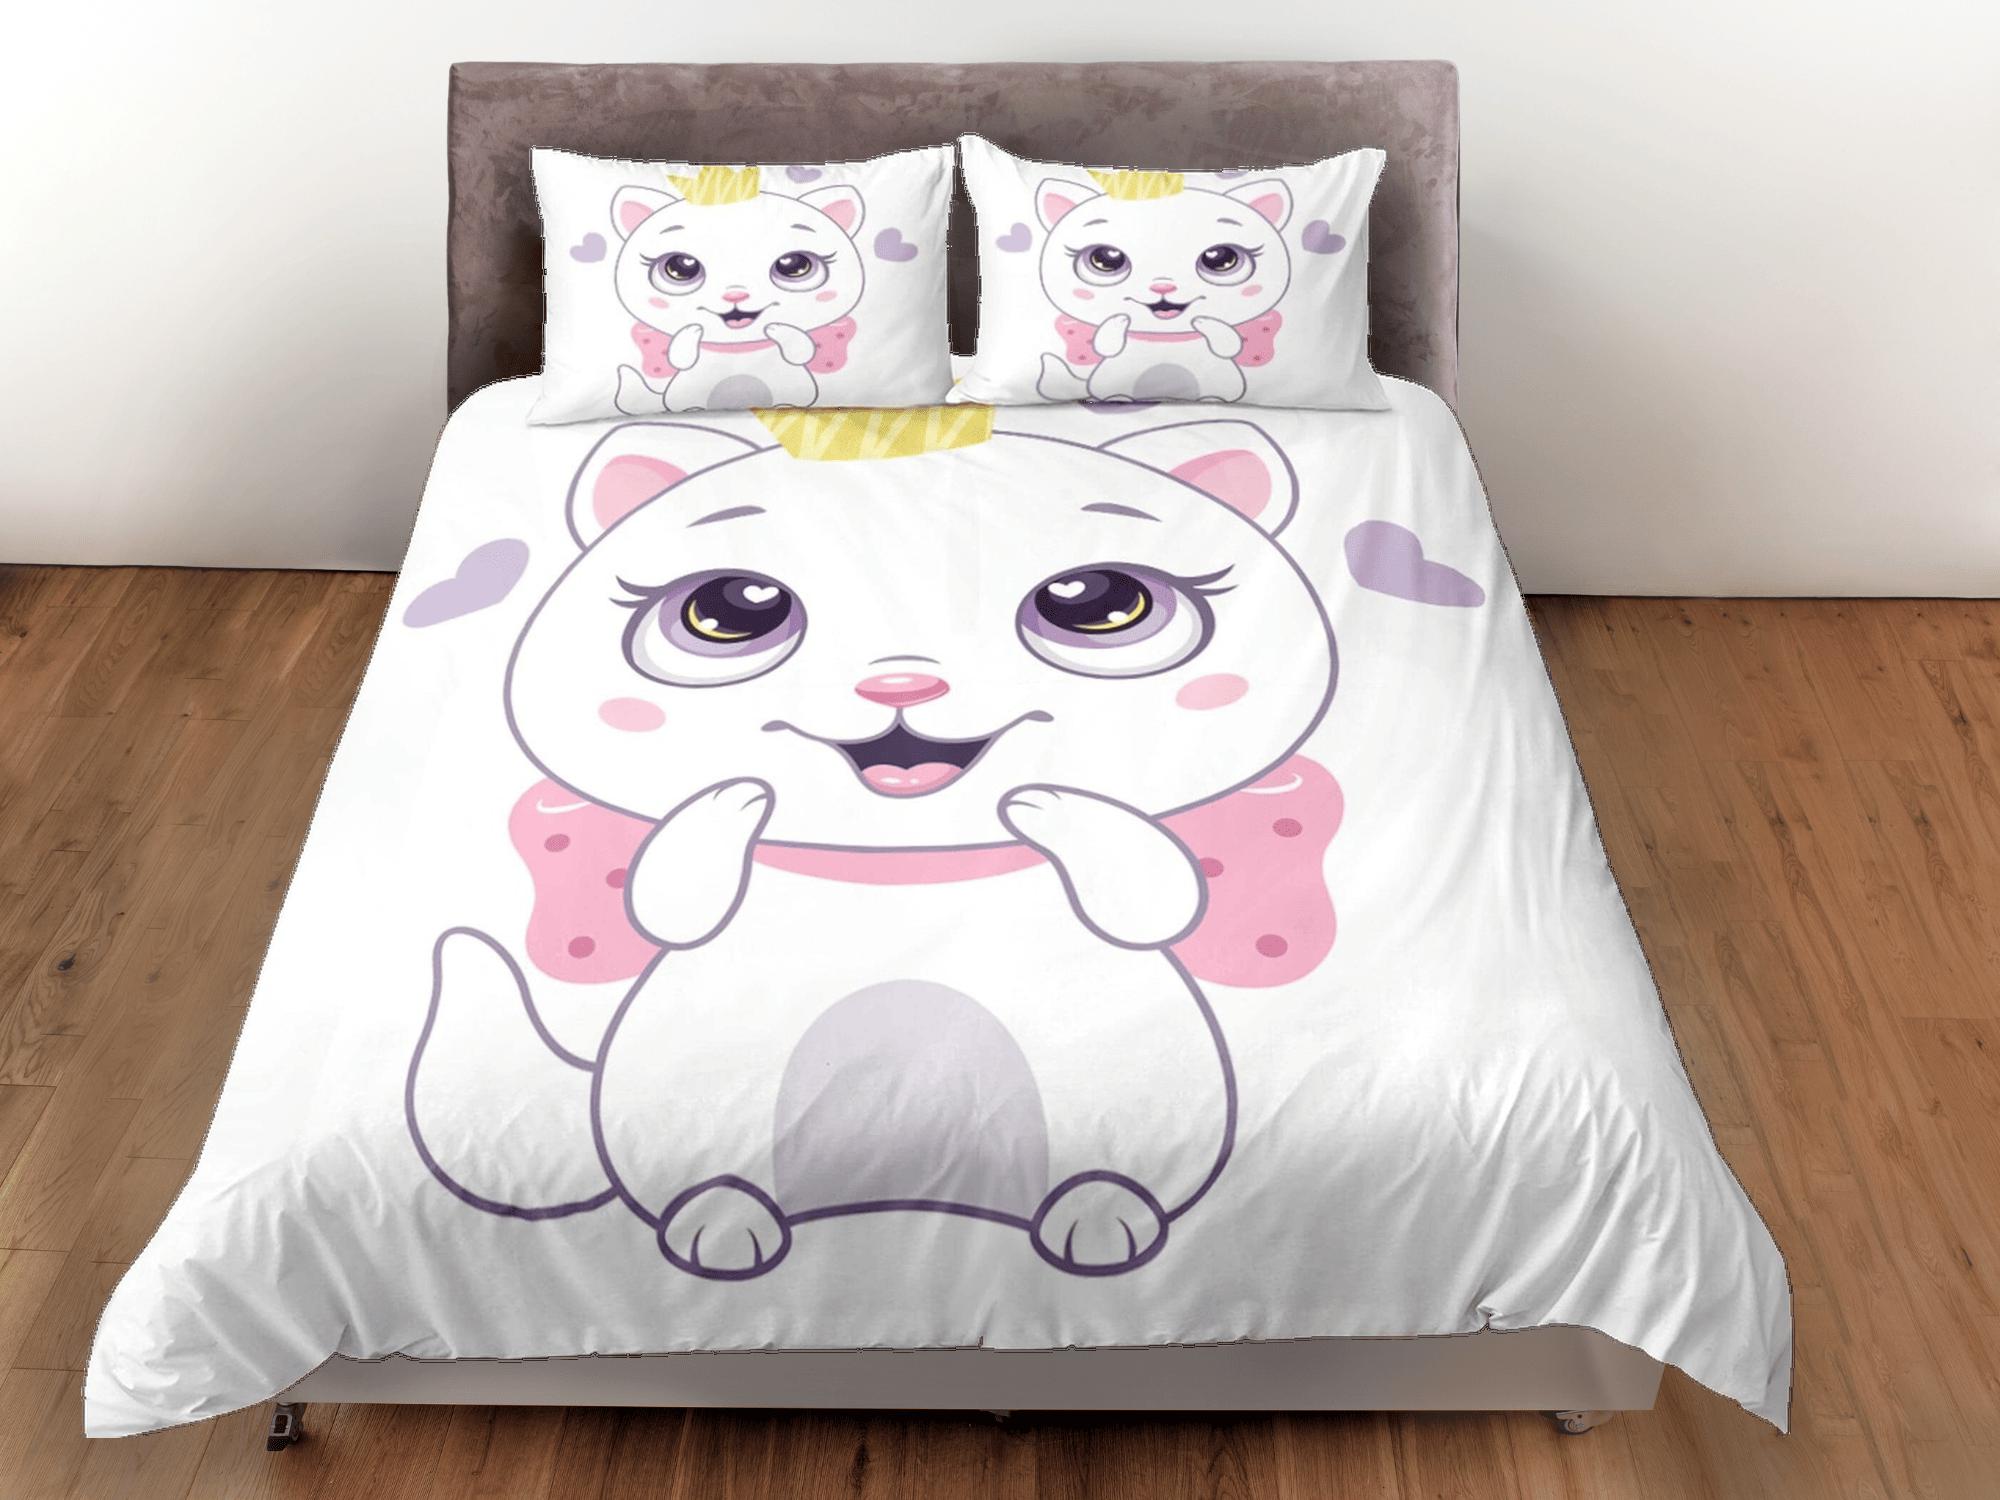 daintyduvet Cute white cat bedding, girl toddler bedding, kids duvet cover set, gift for cat lovers, baby bedding, baby shower gift